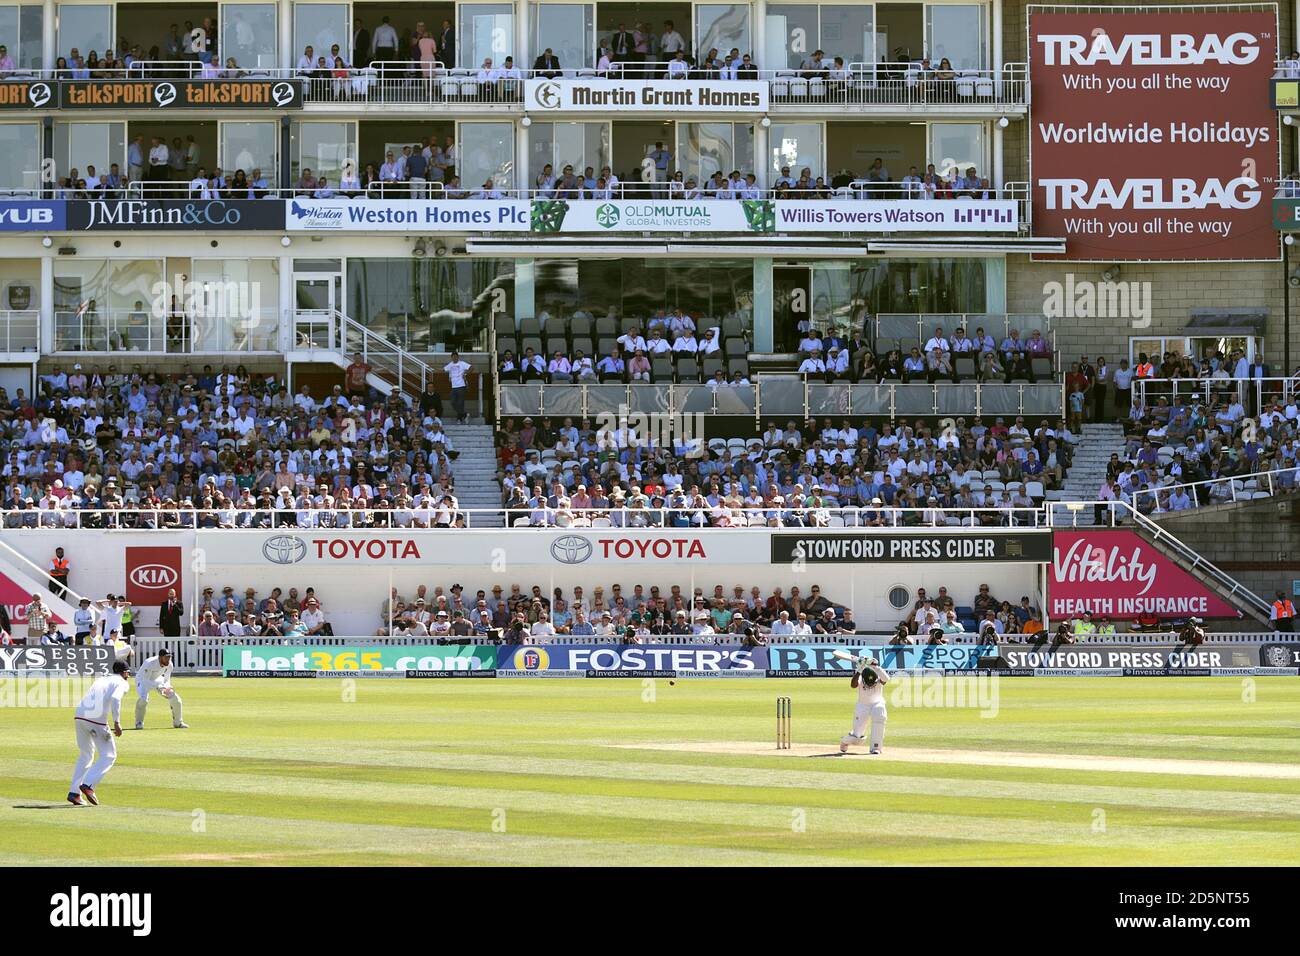 Vue générale de l'ovale Kia pendant le test Match entre l'Angleterre et le Pakistan Banque D'Images